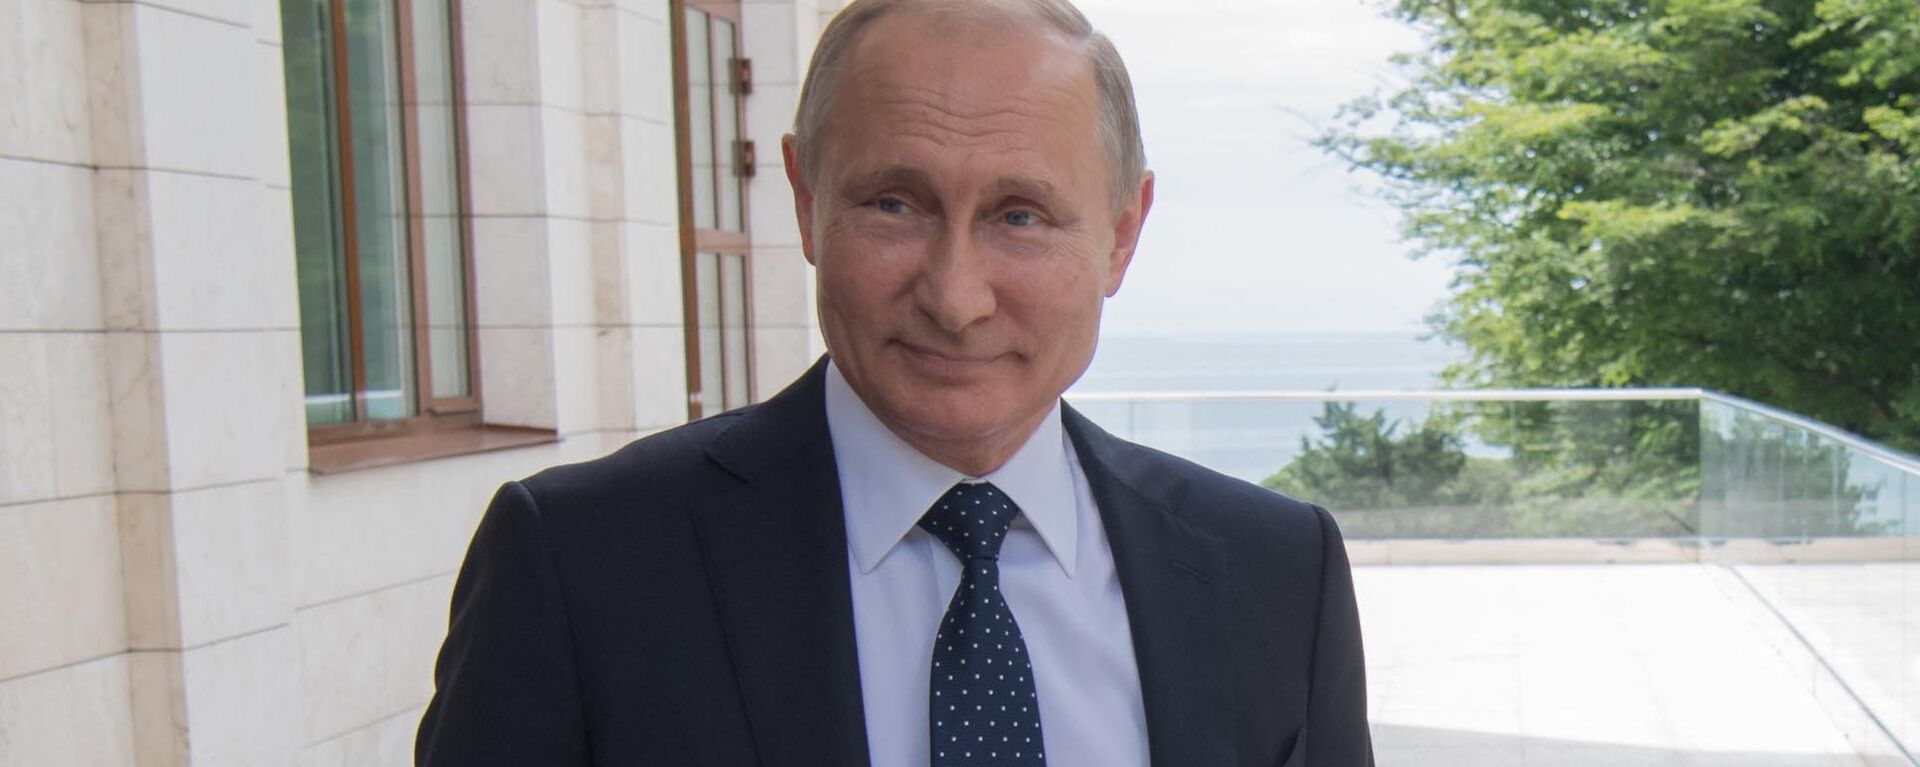  Президент РФ Владимир Путин, архивное фото - Sputnik Таджикистан, 1920, 23.06.2021